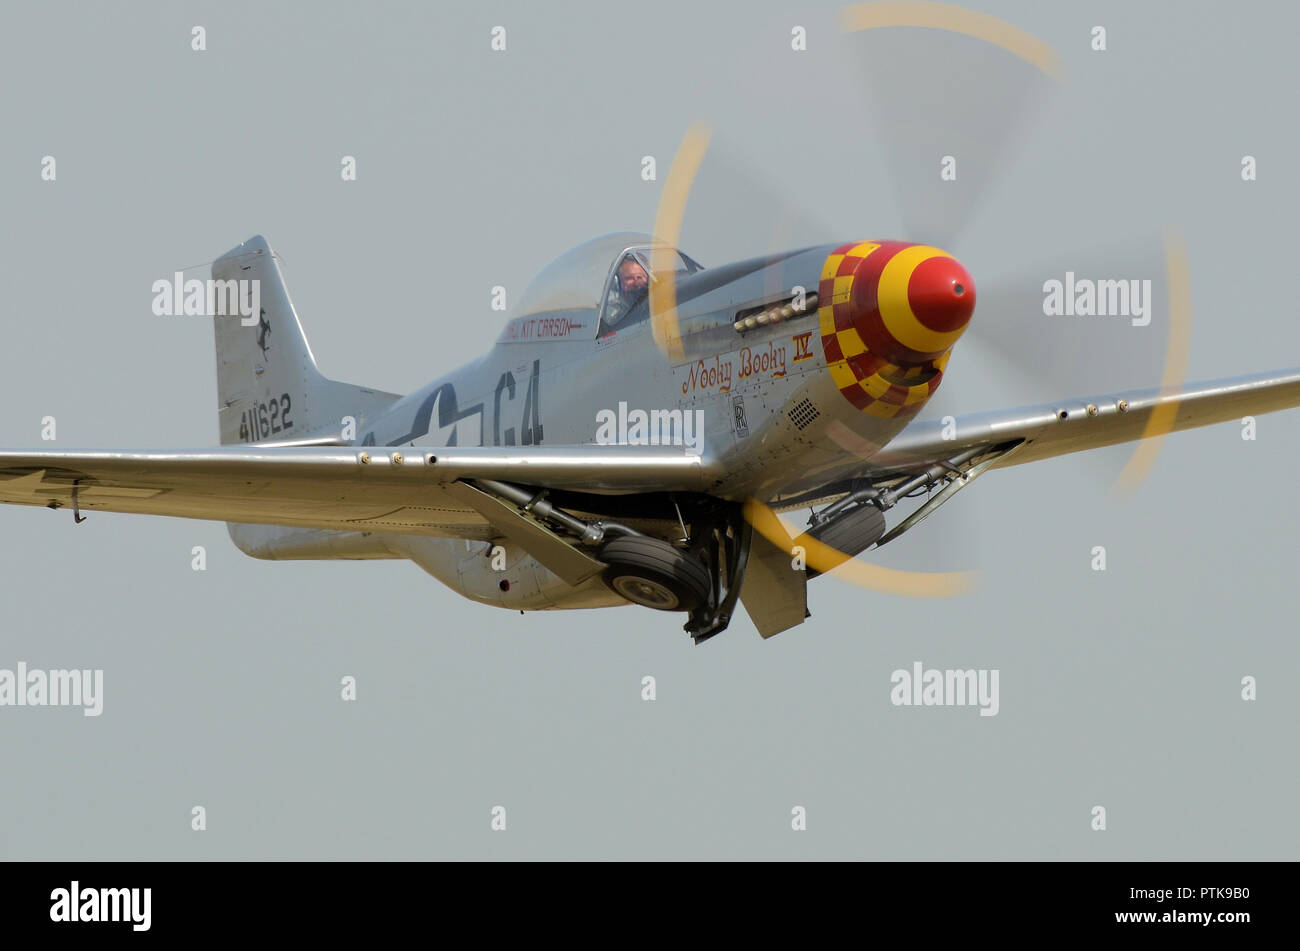 North American P-51 Mustang avión de combate llamado Nooky Booky IV despegando para mostrar en un airshow acomodando sus ruedas del tren de rodaje. Espacio para copiar Foto de stock